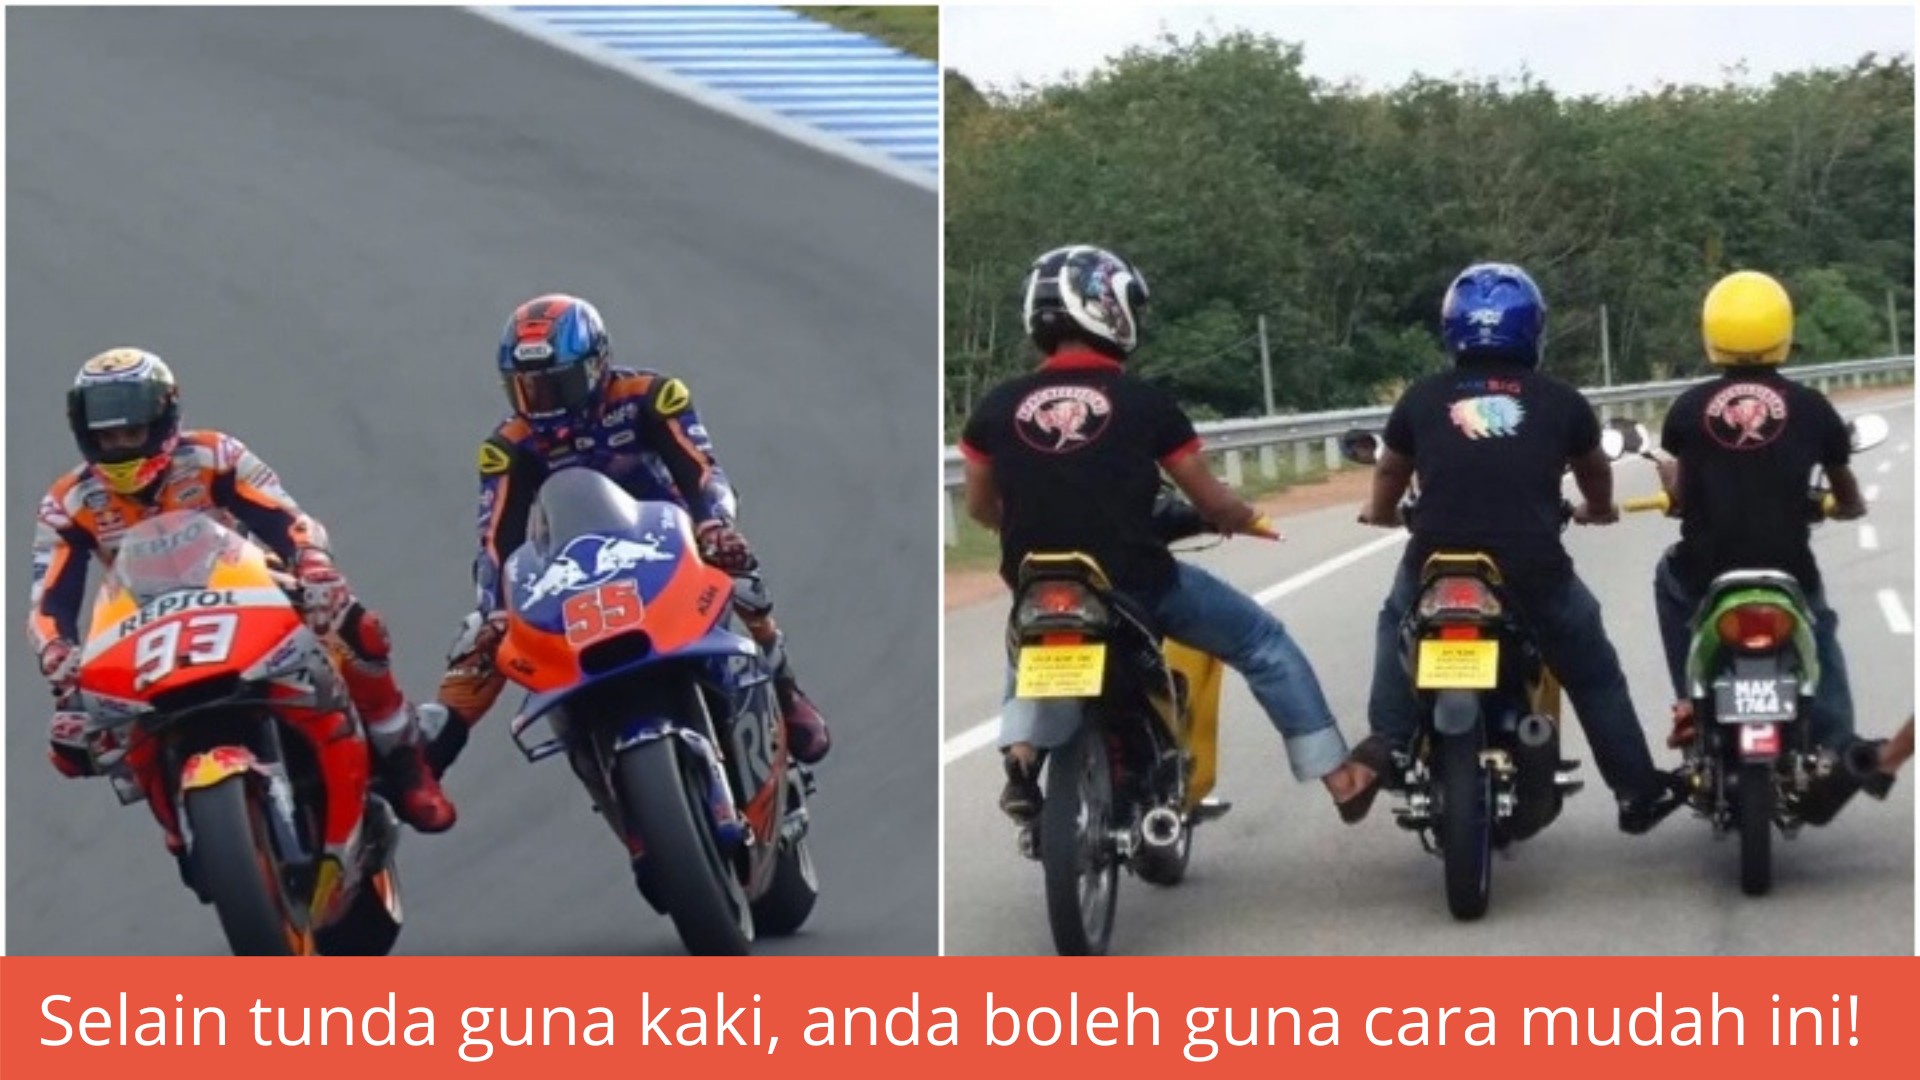 Teknik tunda motosikal yang wajib belajar untuk selamatkan diri dan penunggang lain!